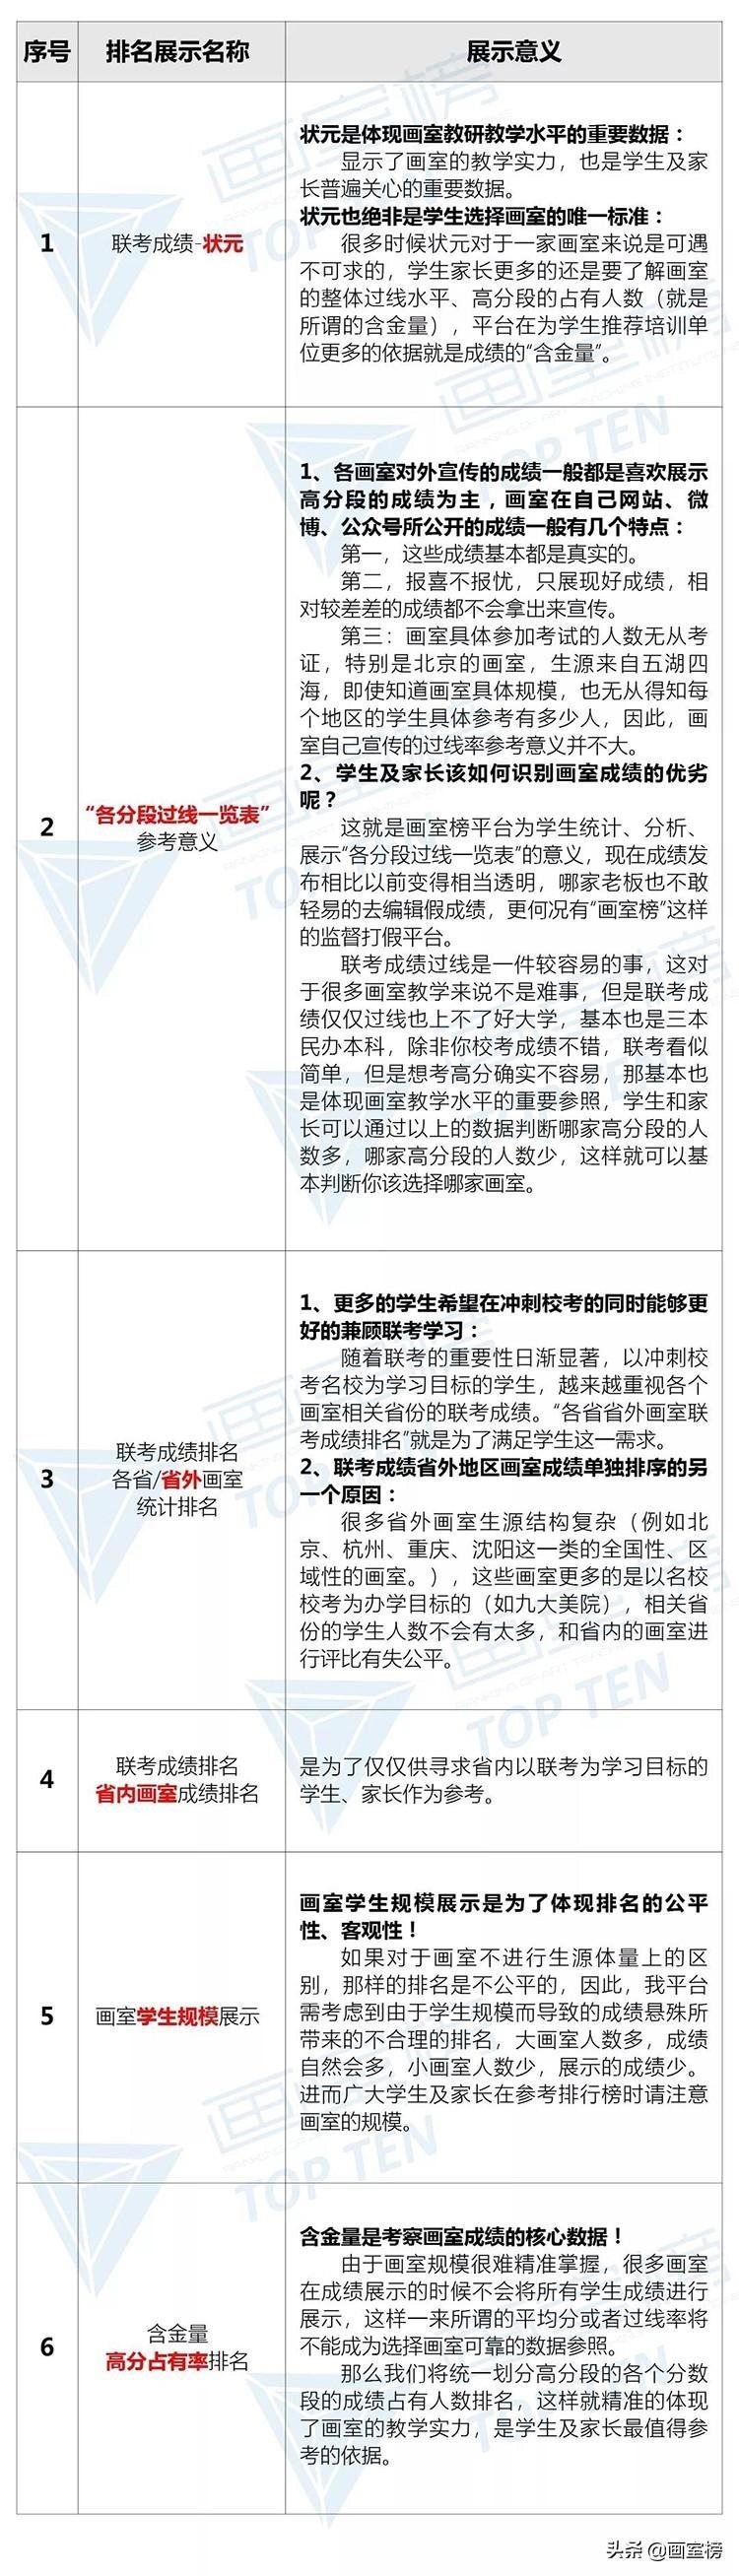 2020年河北省美术联考成绩排行榜公布！看看排名前十的画室有哪些